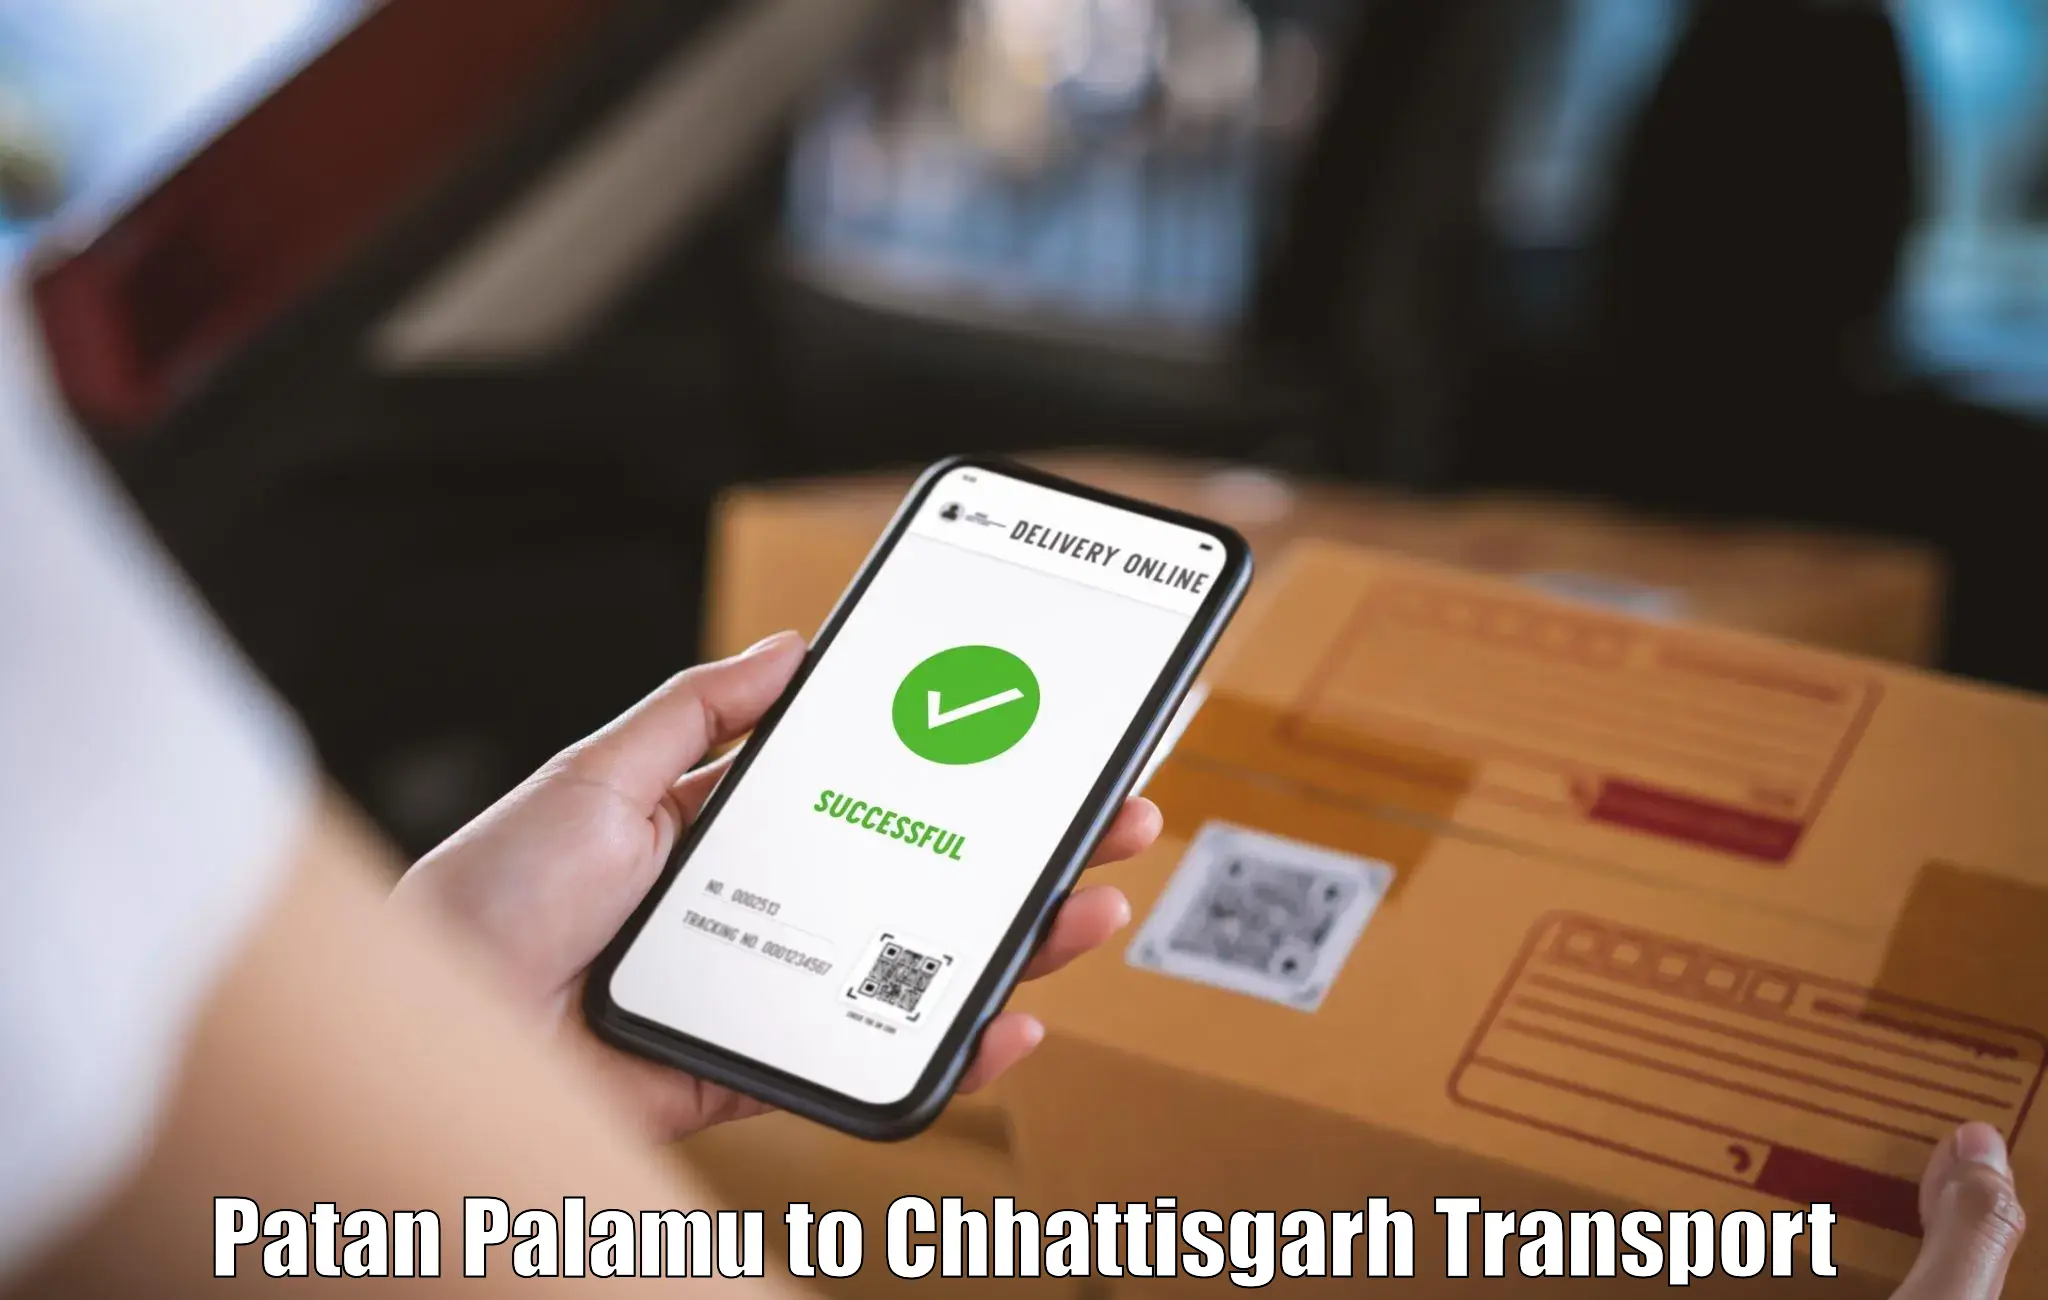 Interstate transport services Patan Palamu to Kanker